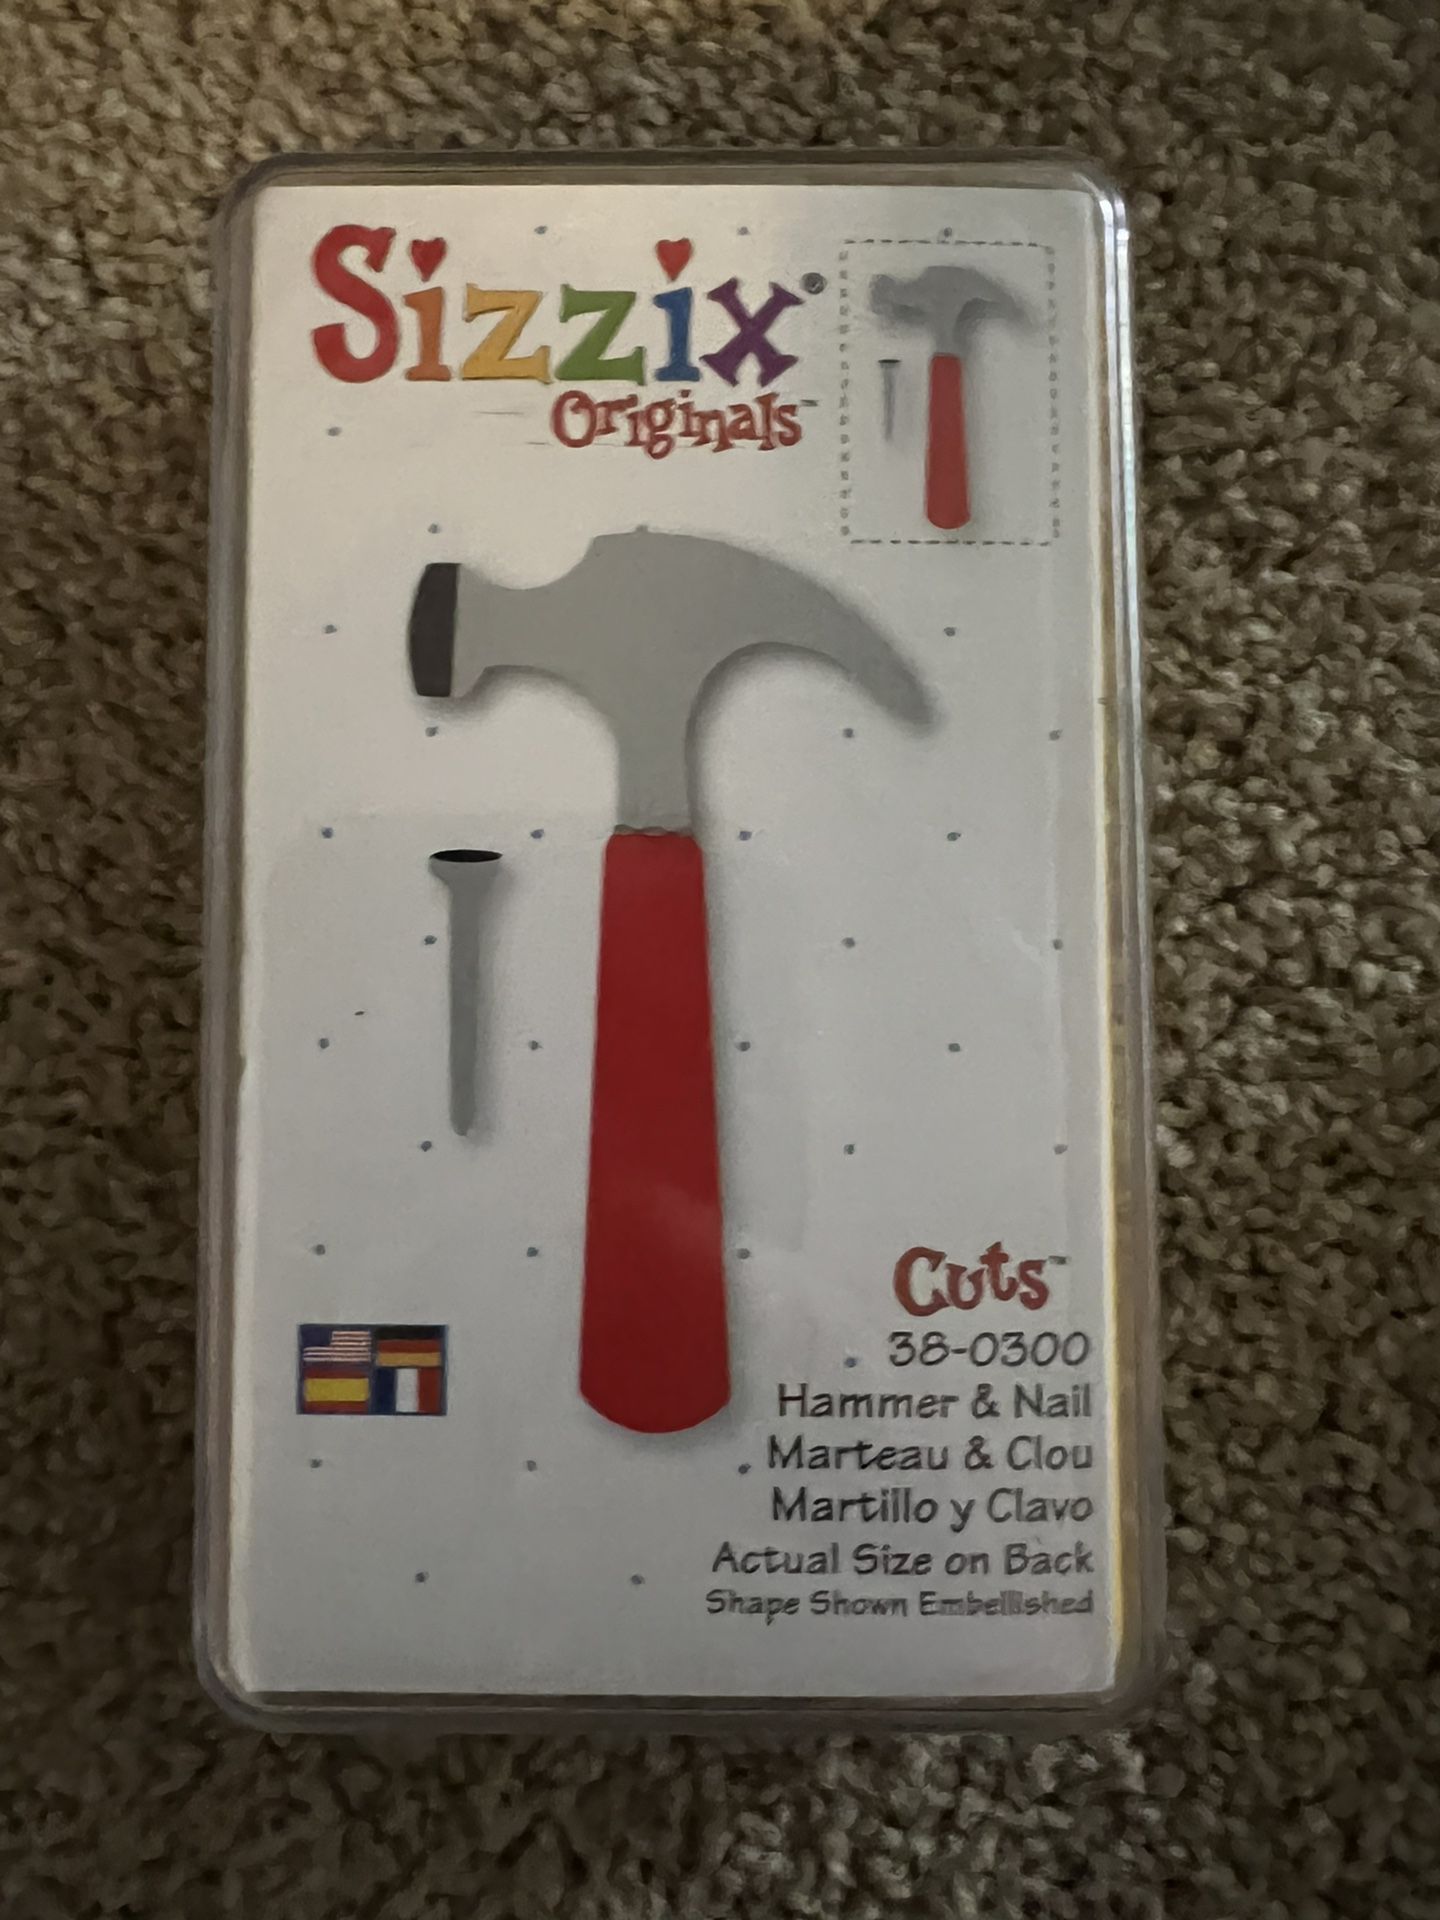 Sizzix Originals Hammer & Nail